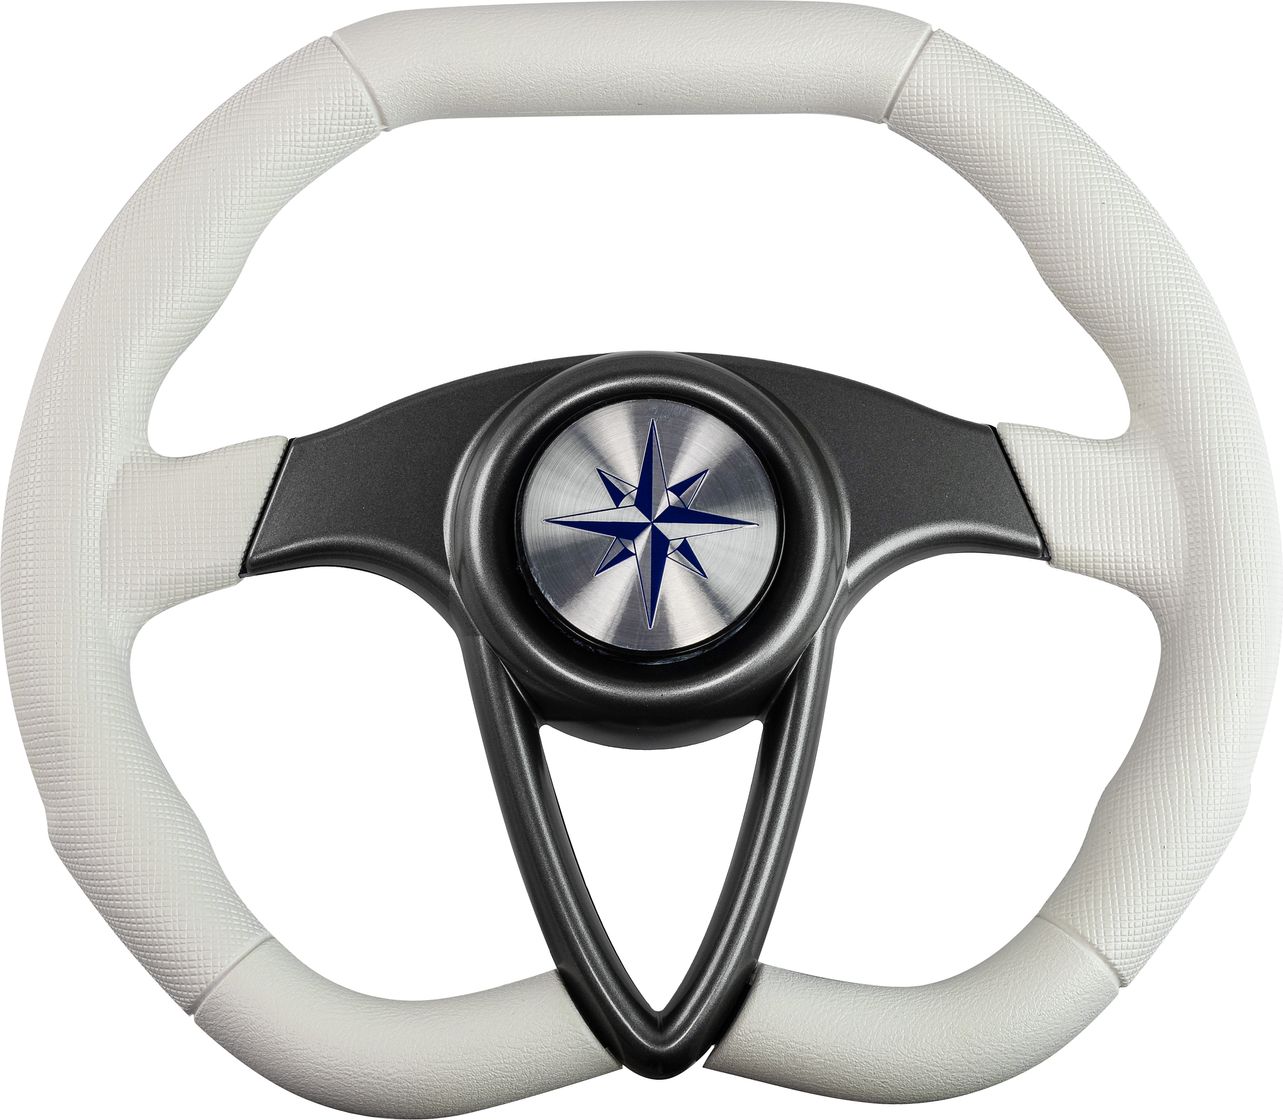 Рулевое колесо BARRACUDA обод белый, спицы серебряные д. 350 мм VN135002-08 рулевое колесо delfino обод белый спицы серебряные д 340 мм vn70401 08